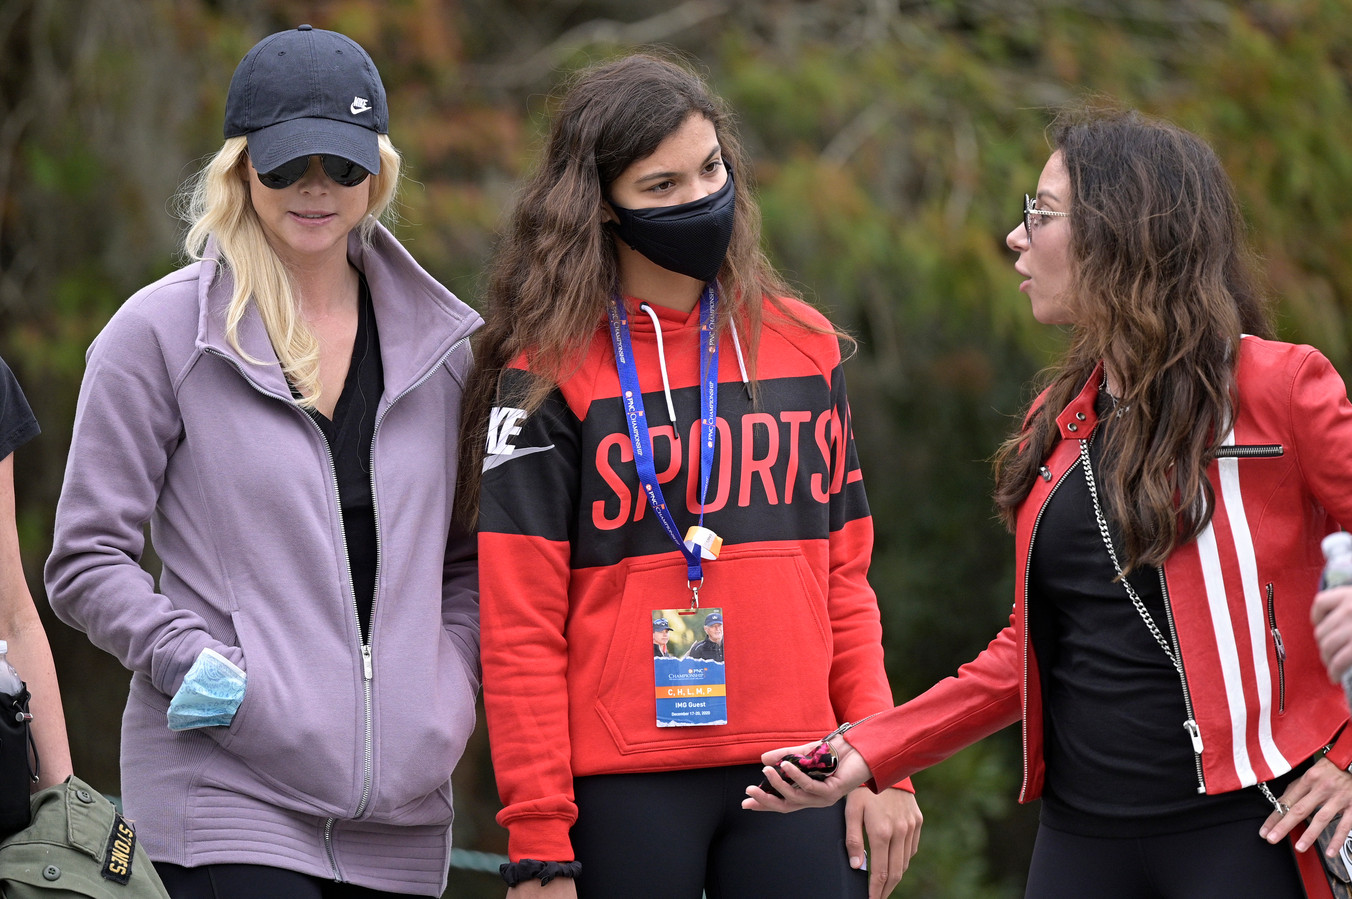 Sam Alexis Woods, la fille de Tiger, au championnat PNC à Orlando le 20 décembre 2020. Elle est accompagnée d’Elin Nordegren, ex-compagne de Tiger Woods (à gauche) et d’Erica Herman, la partenaire actuelle du golfeur (à droite).